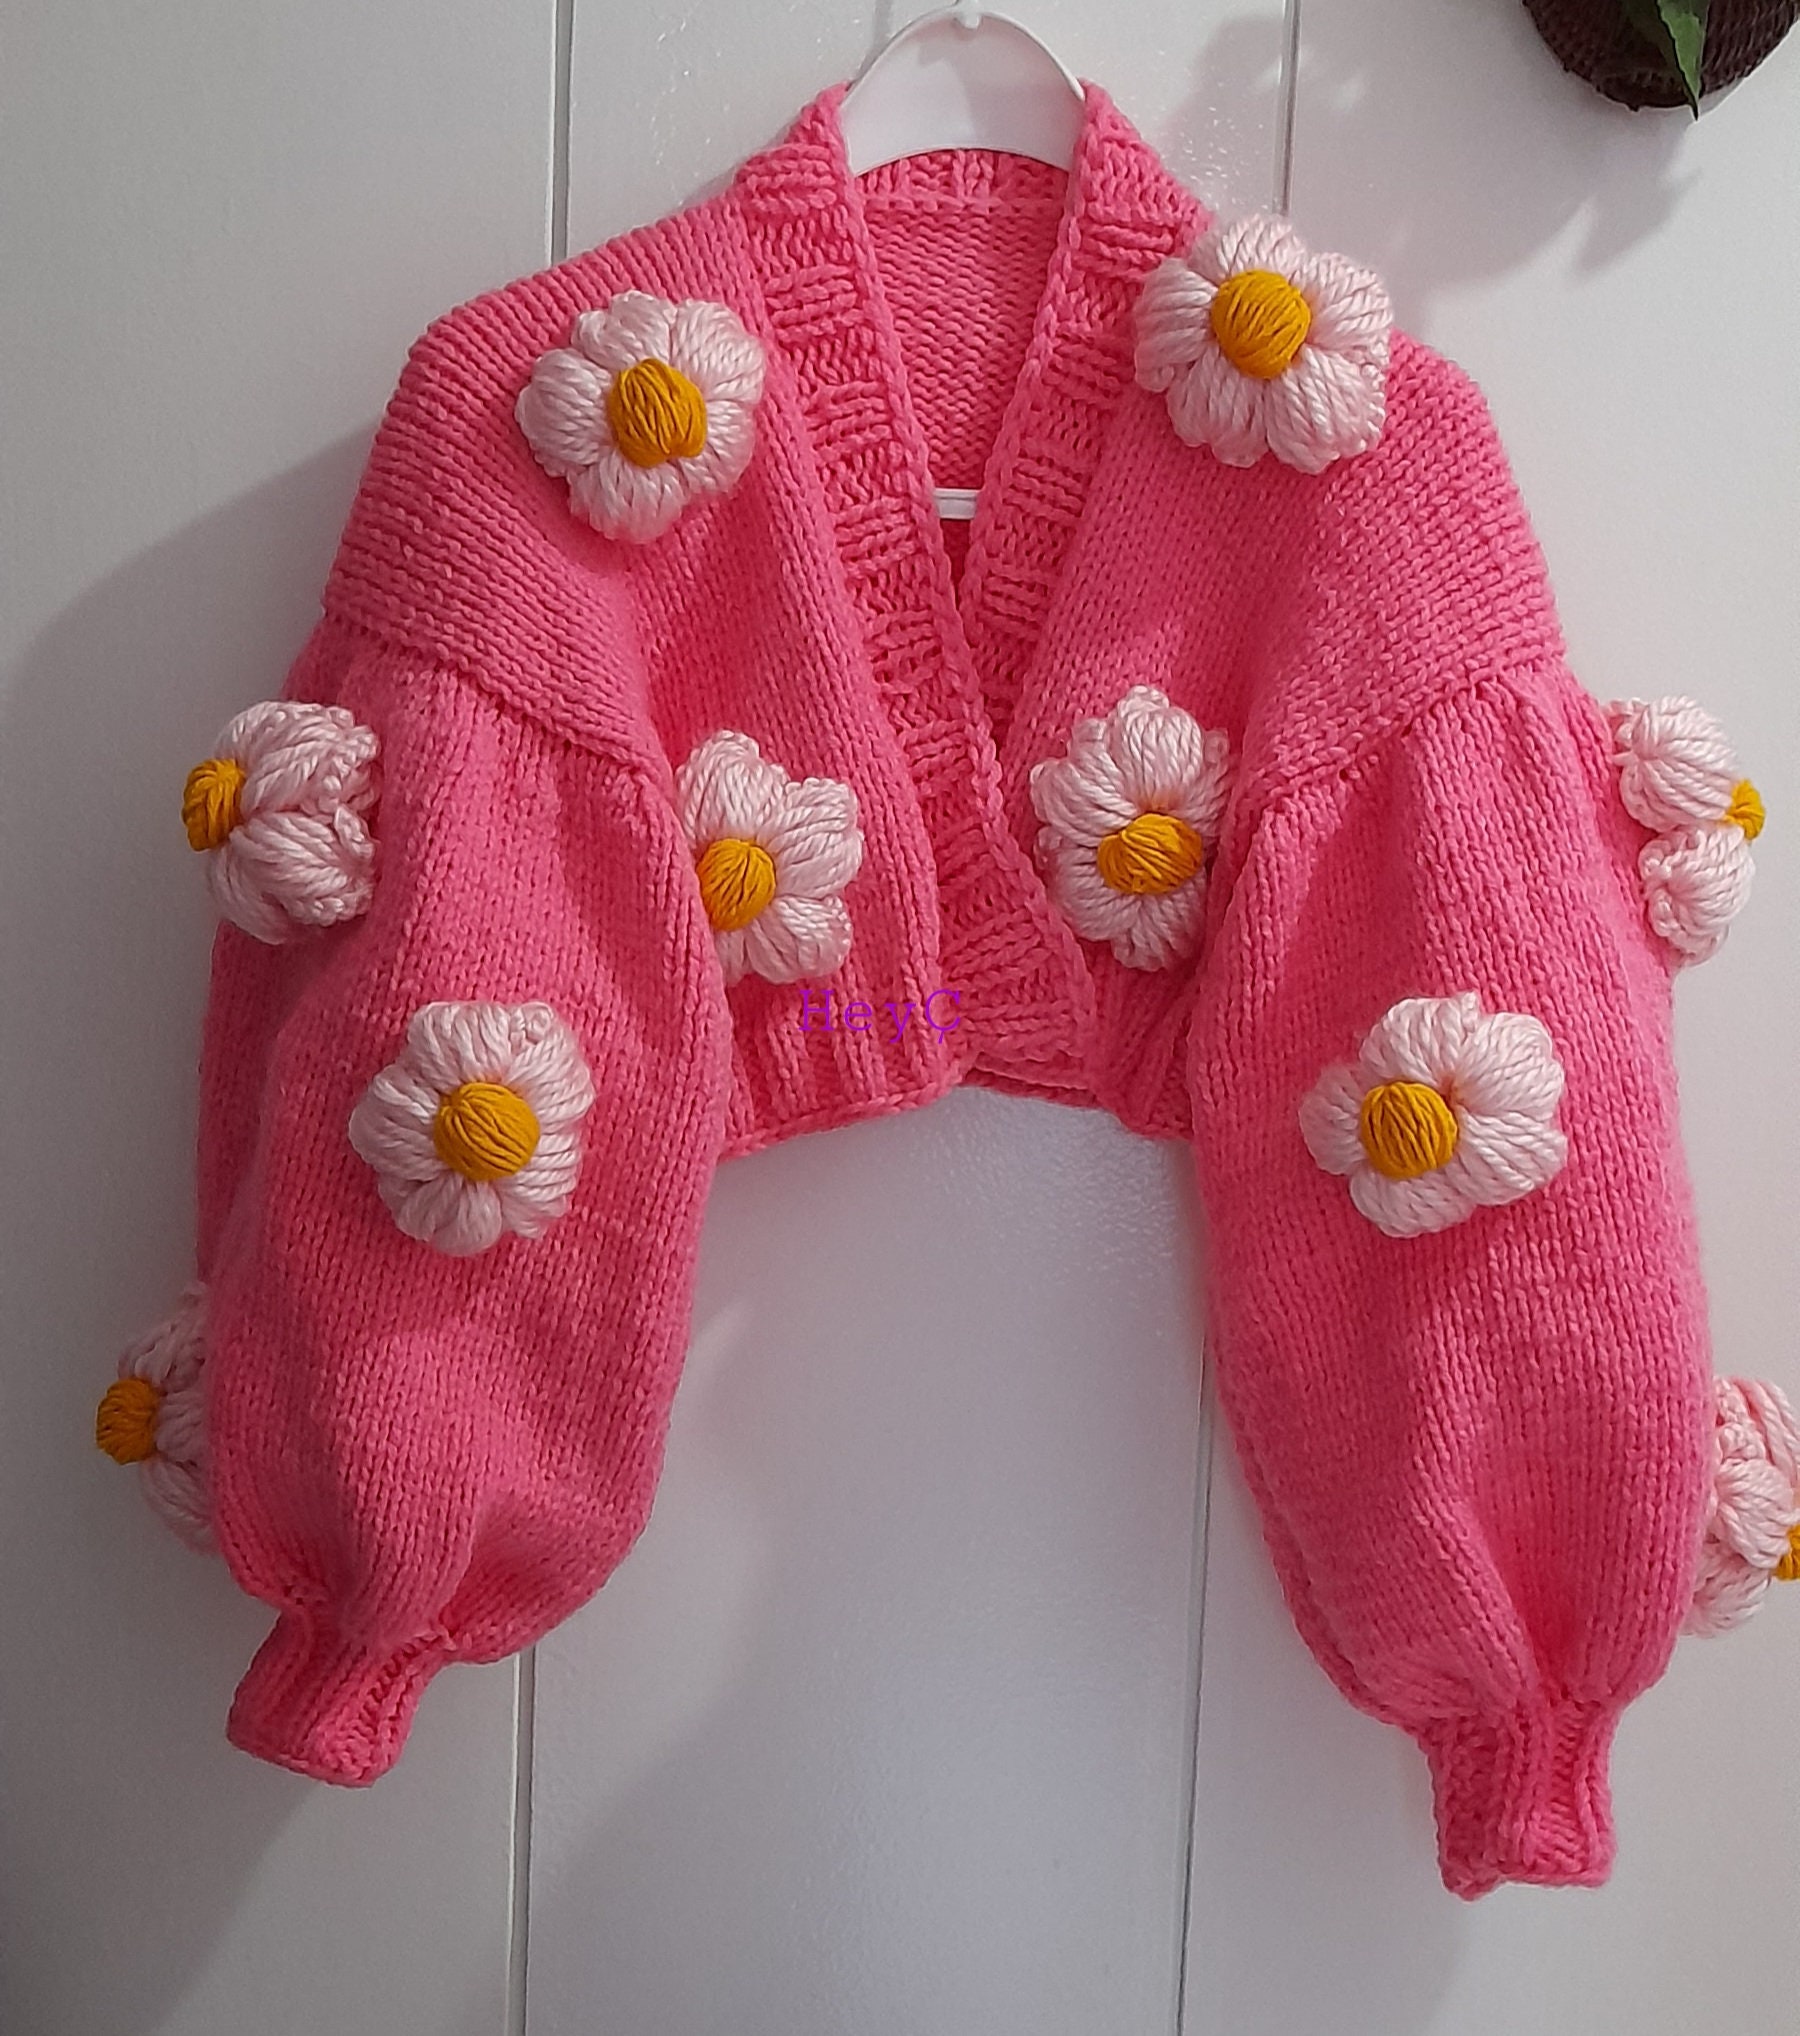 Daisy Knit Jacket Chunky Knit Product Handmade Daisy Pink | Etsy